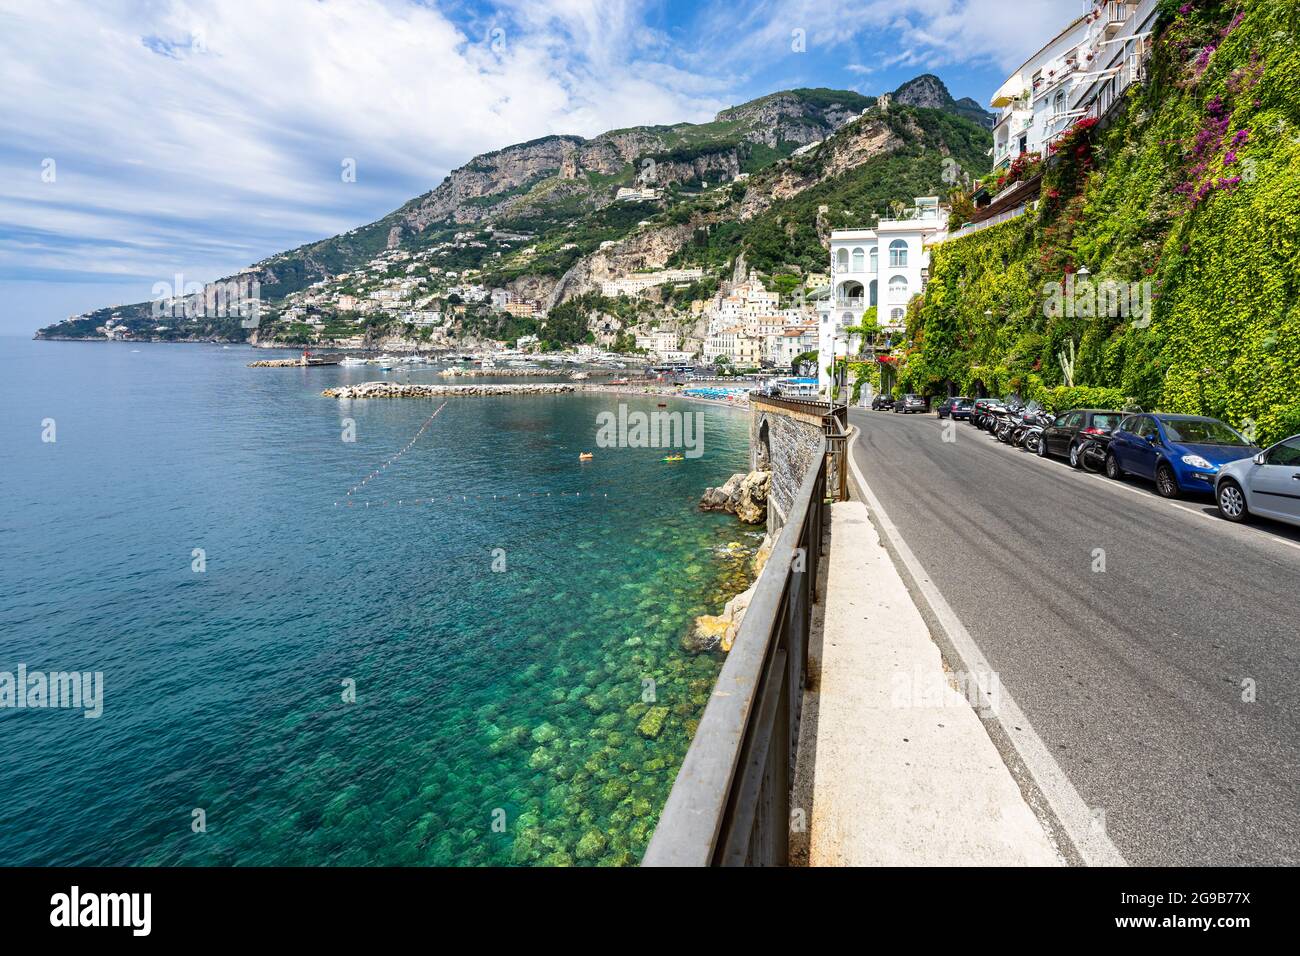 La célèbre route côtière de la côte amalfitaine près de la ville d'Amalfi surplombant la mer Méditerranée, en Italie Banque D'Images